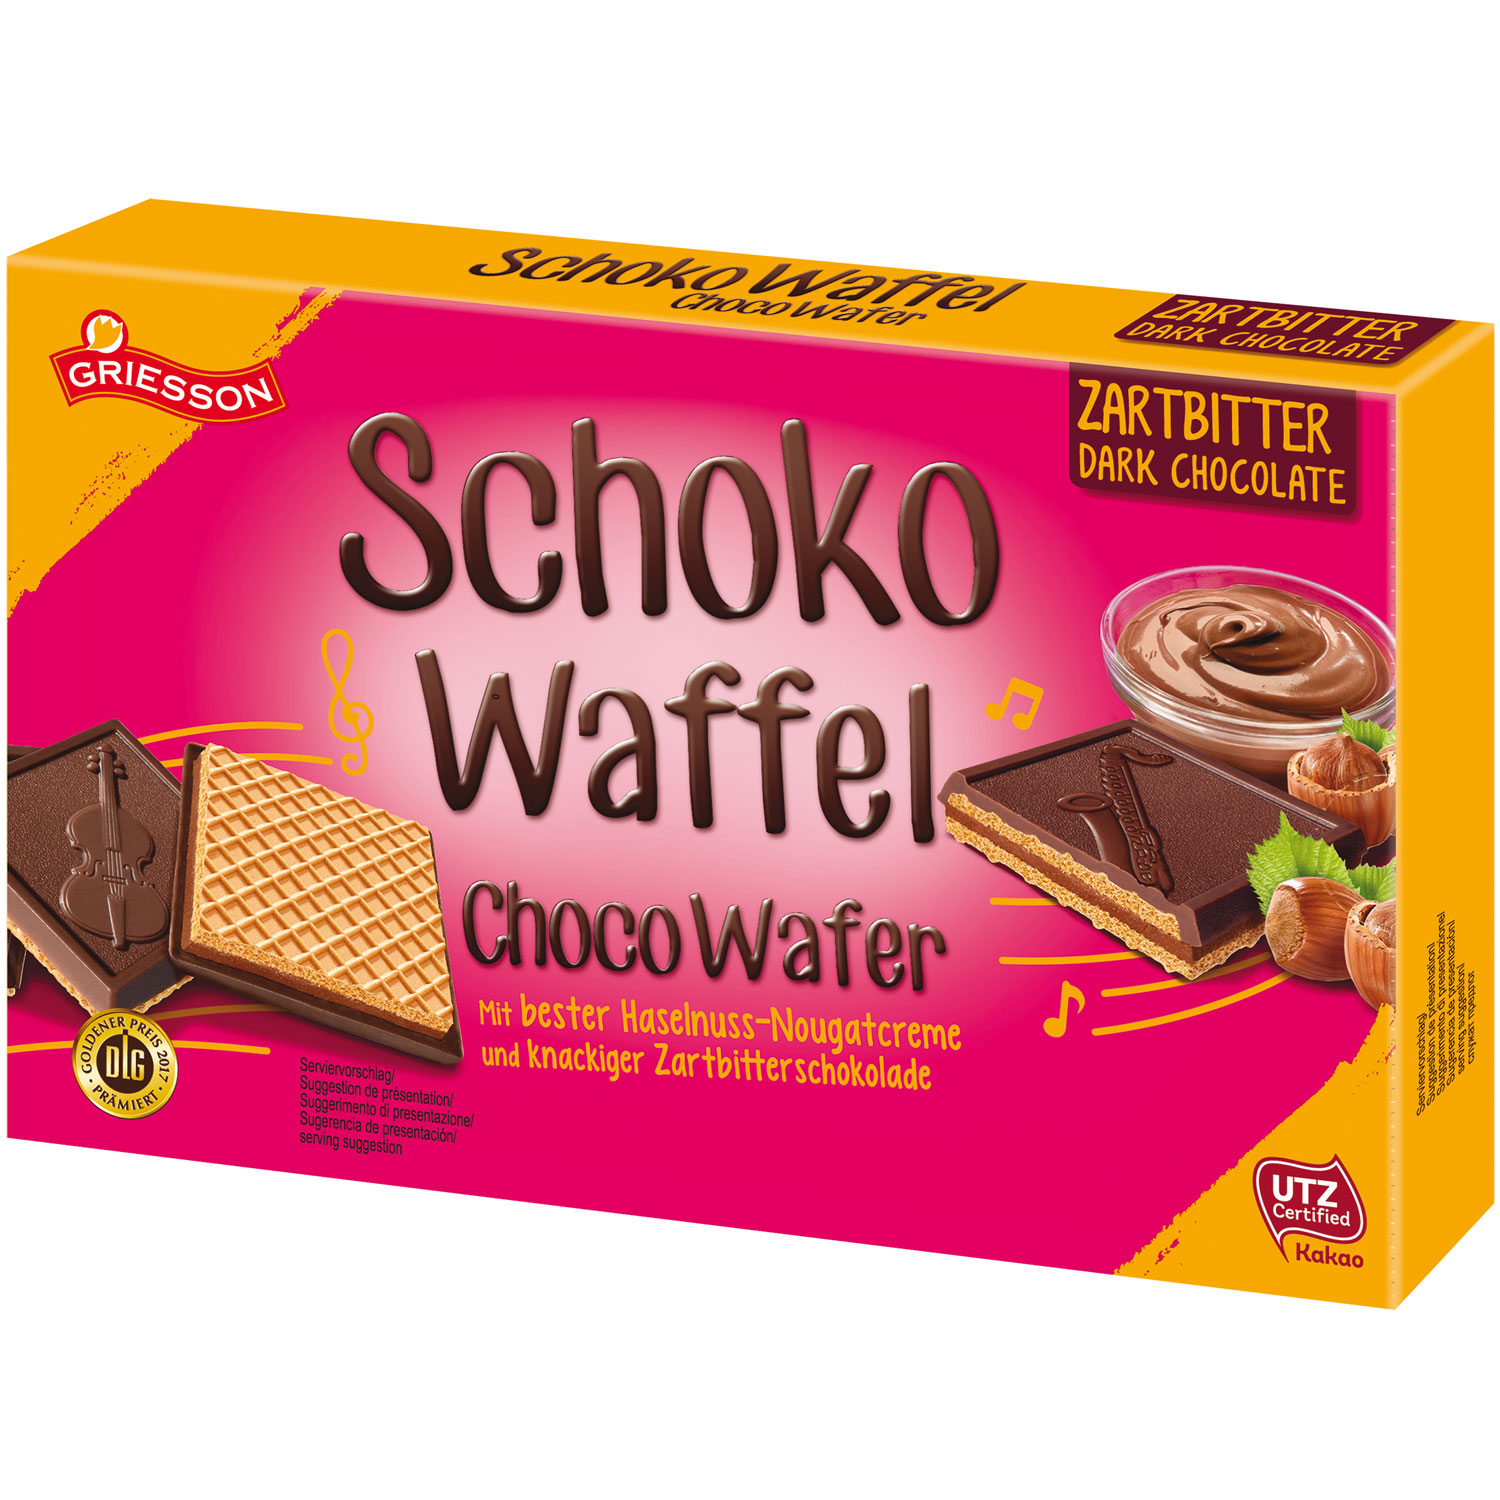 Griesson Schoko-Waffeln Zartbitter | Online kaufen im World of Sweets Shop